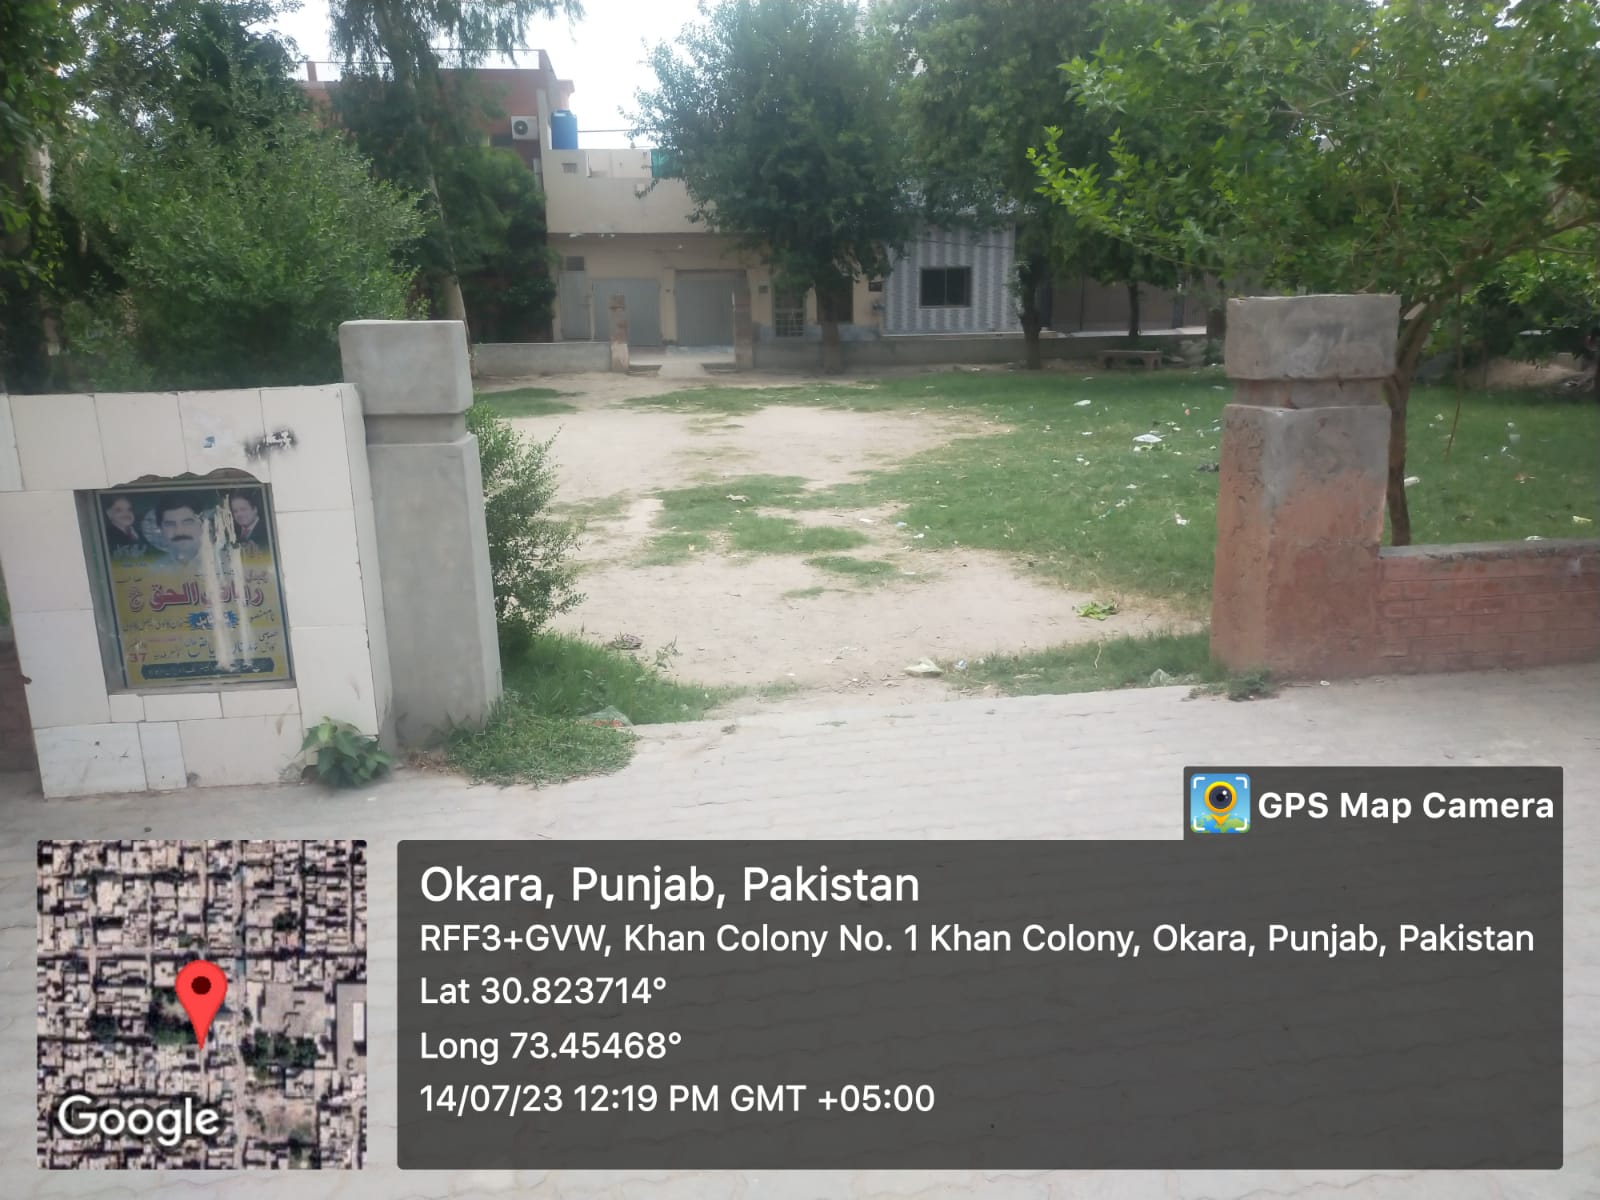 Khan colony park3